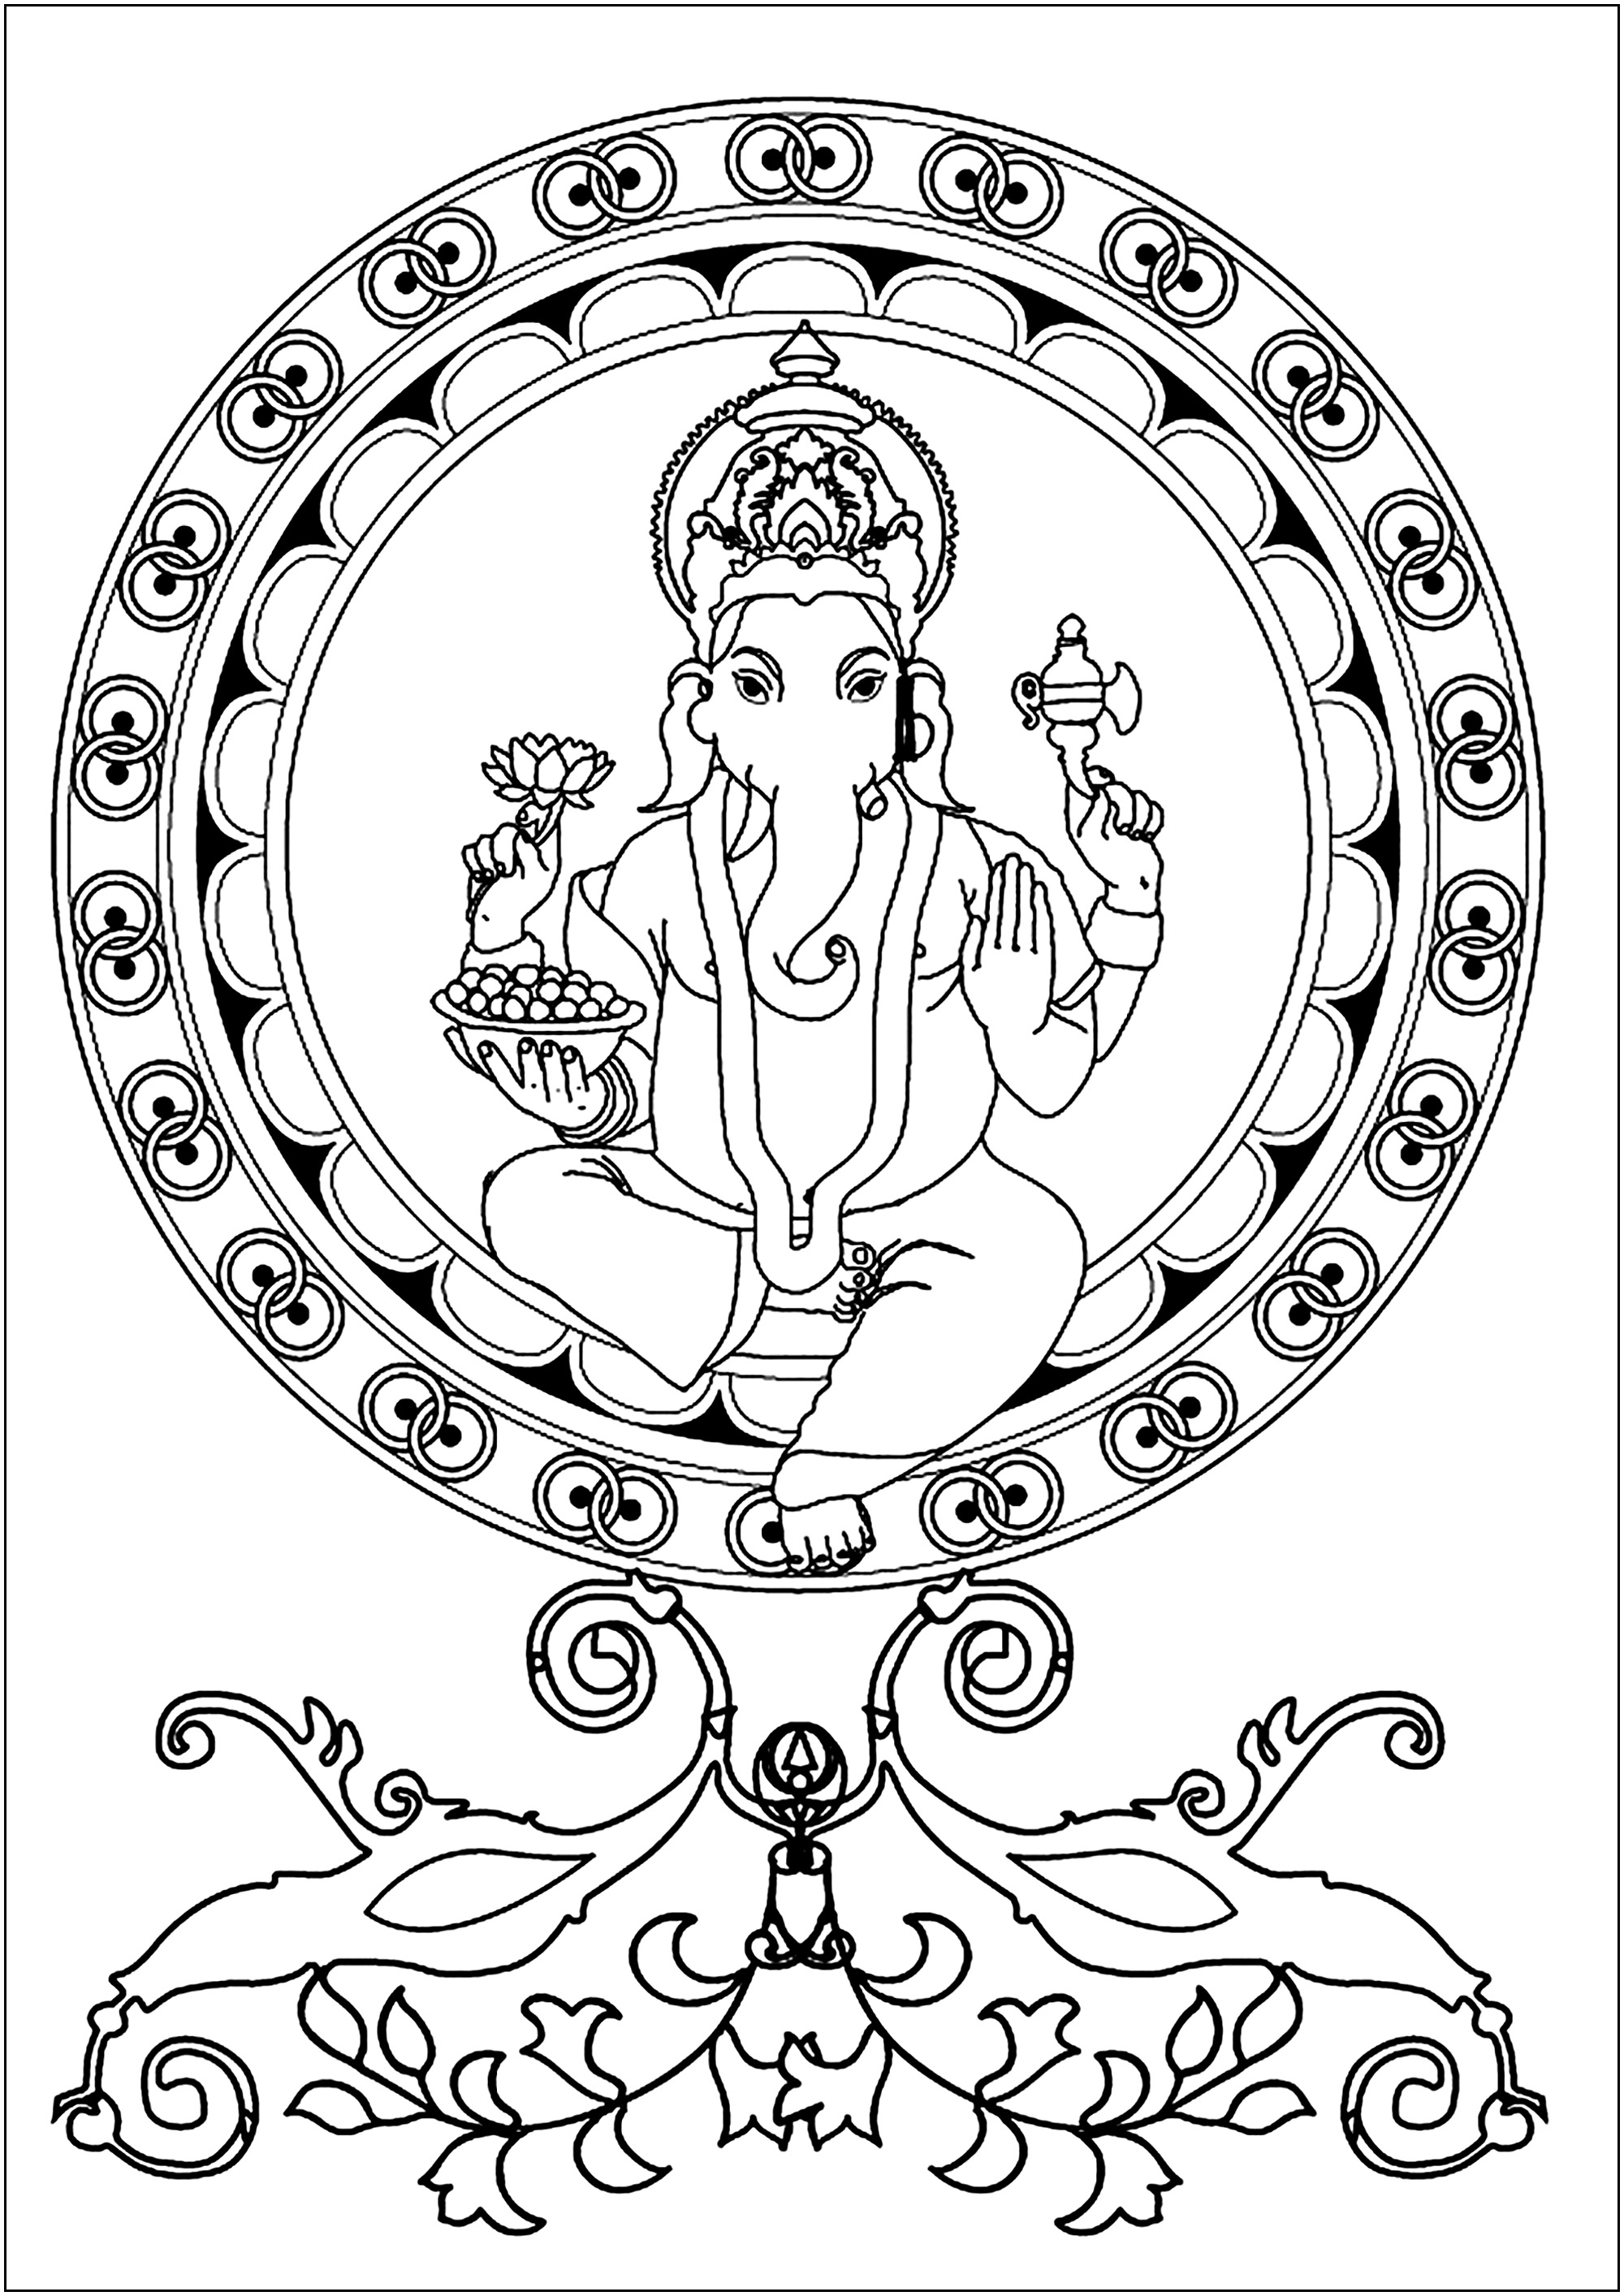 Ganesh in the center of a Mandala. Ganesh est une divinité hindoue largement vénérée comme le dieu de la sagesse, de l'intelligence et de la prospérité.Représenté avec une tête d'éléphant et un corps humain, il est souvent honoré au début de rituels et de cérémonies pour éliminer les obstacles (Vighna) et apporter la réussite.